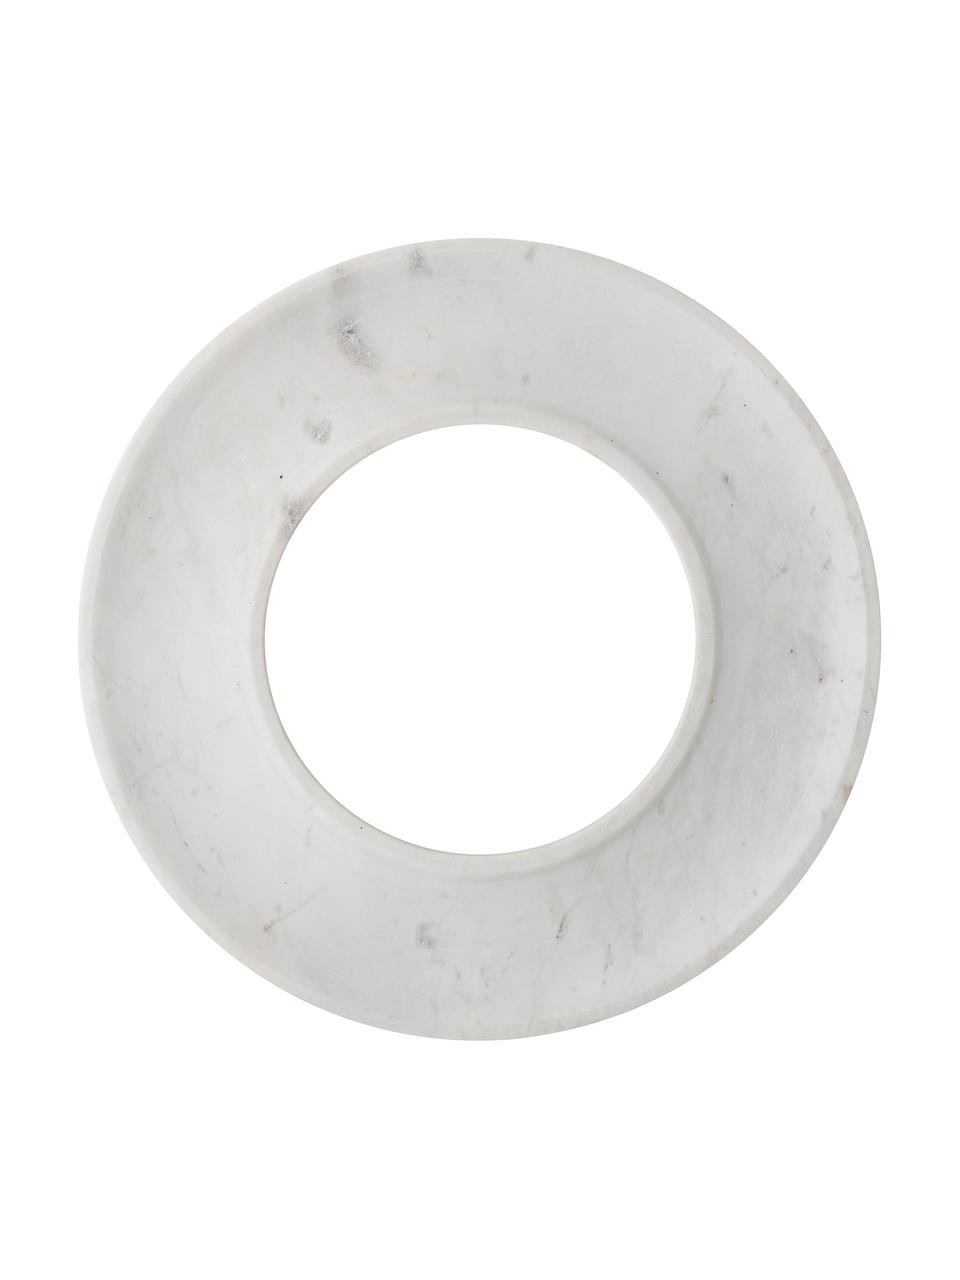 Mramorový servírovací talíř na tapas Neeo, Ø 33 cm, Bílá